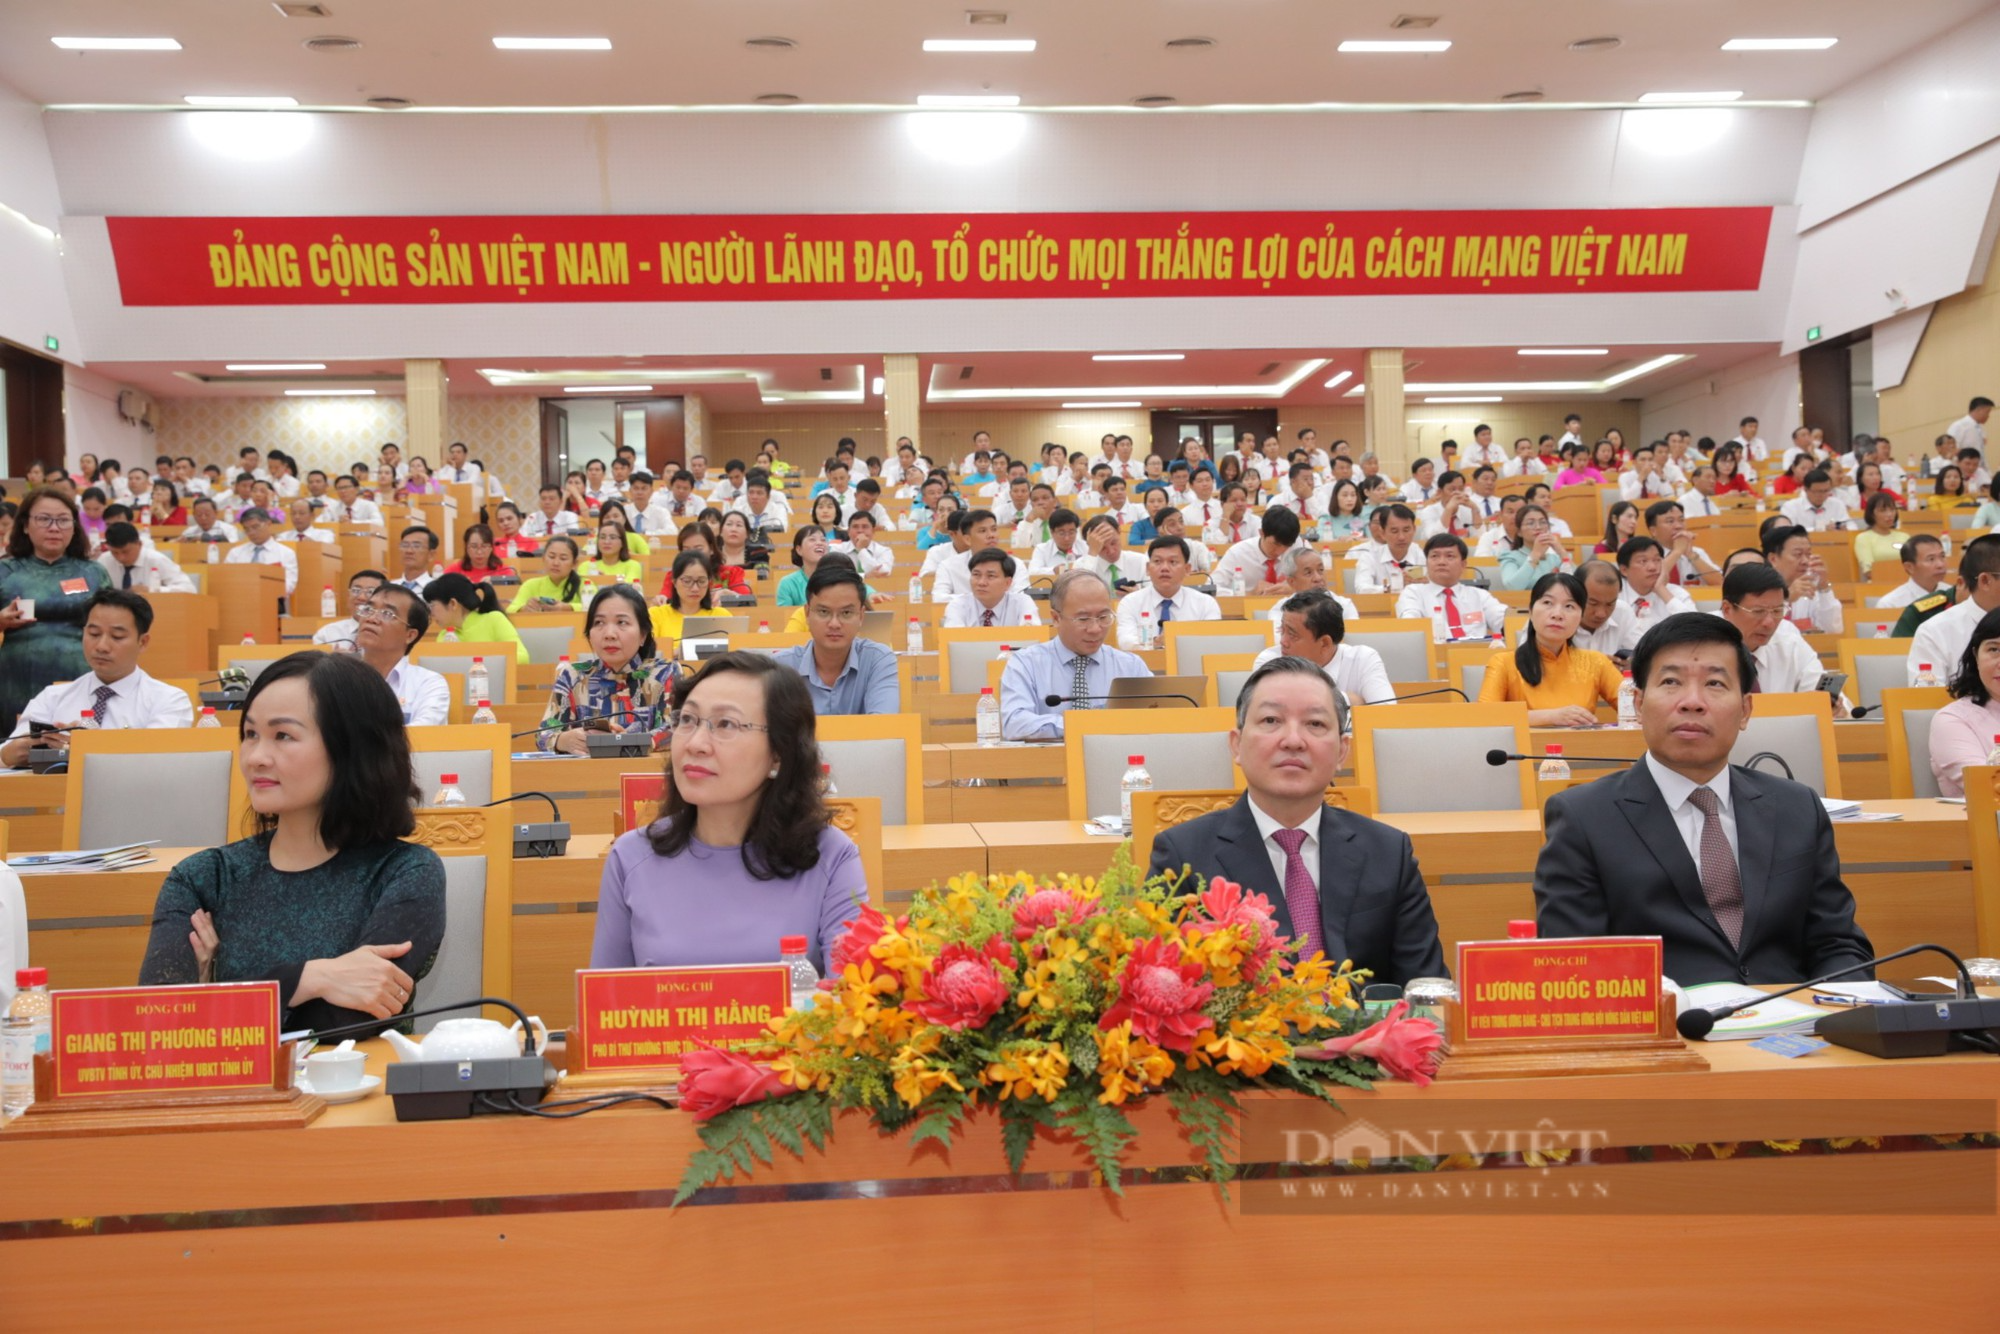 Chủ tịch Trung ương Hội Nông dân Việt Nam Lương Quốc Đoàn tham dự đại hội đại biểu hội nông dân tỉnh Bình Phước - Ảnh 1.